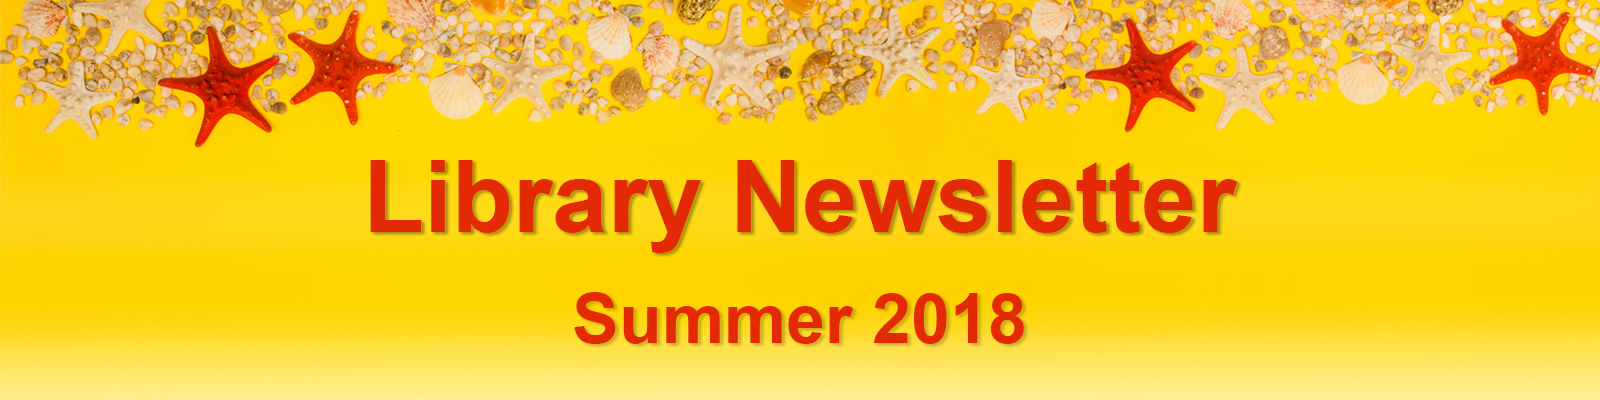 Library Newsletter - Summer 2018